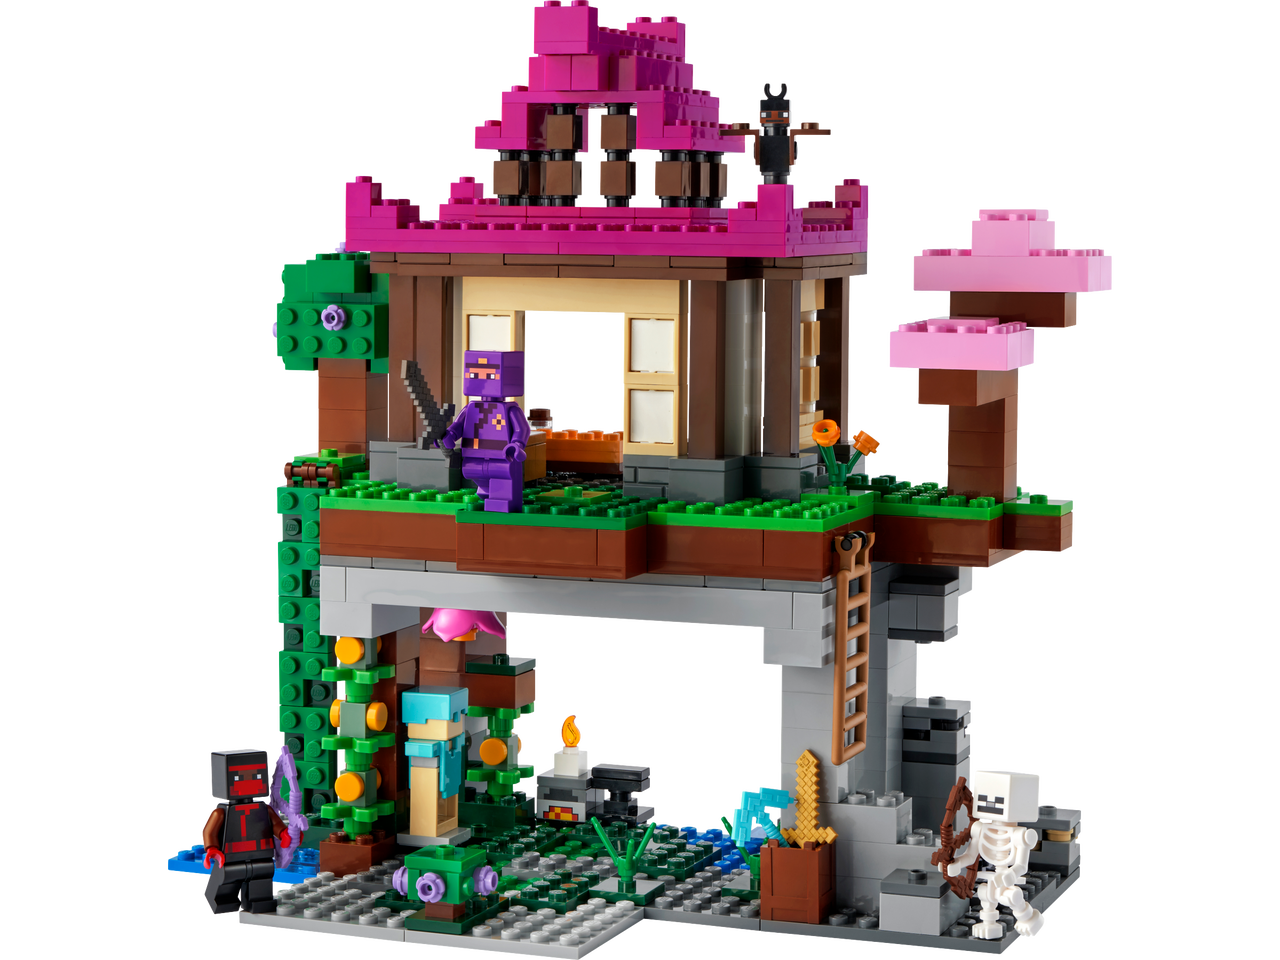 Lego Lego Minecraft 21183 - Le camp d'entraînement